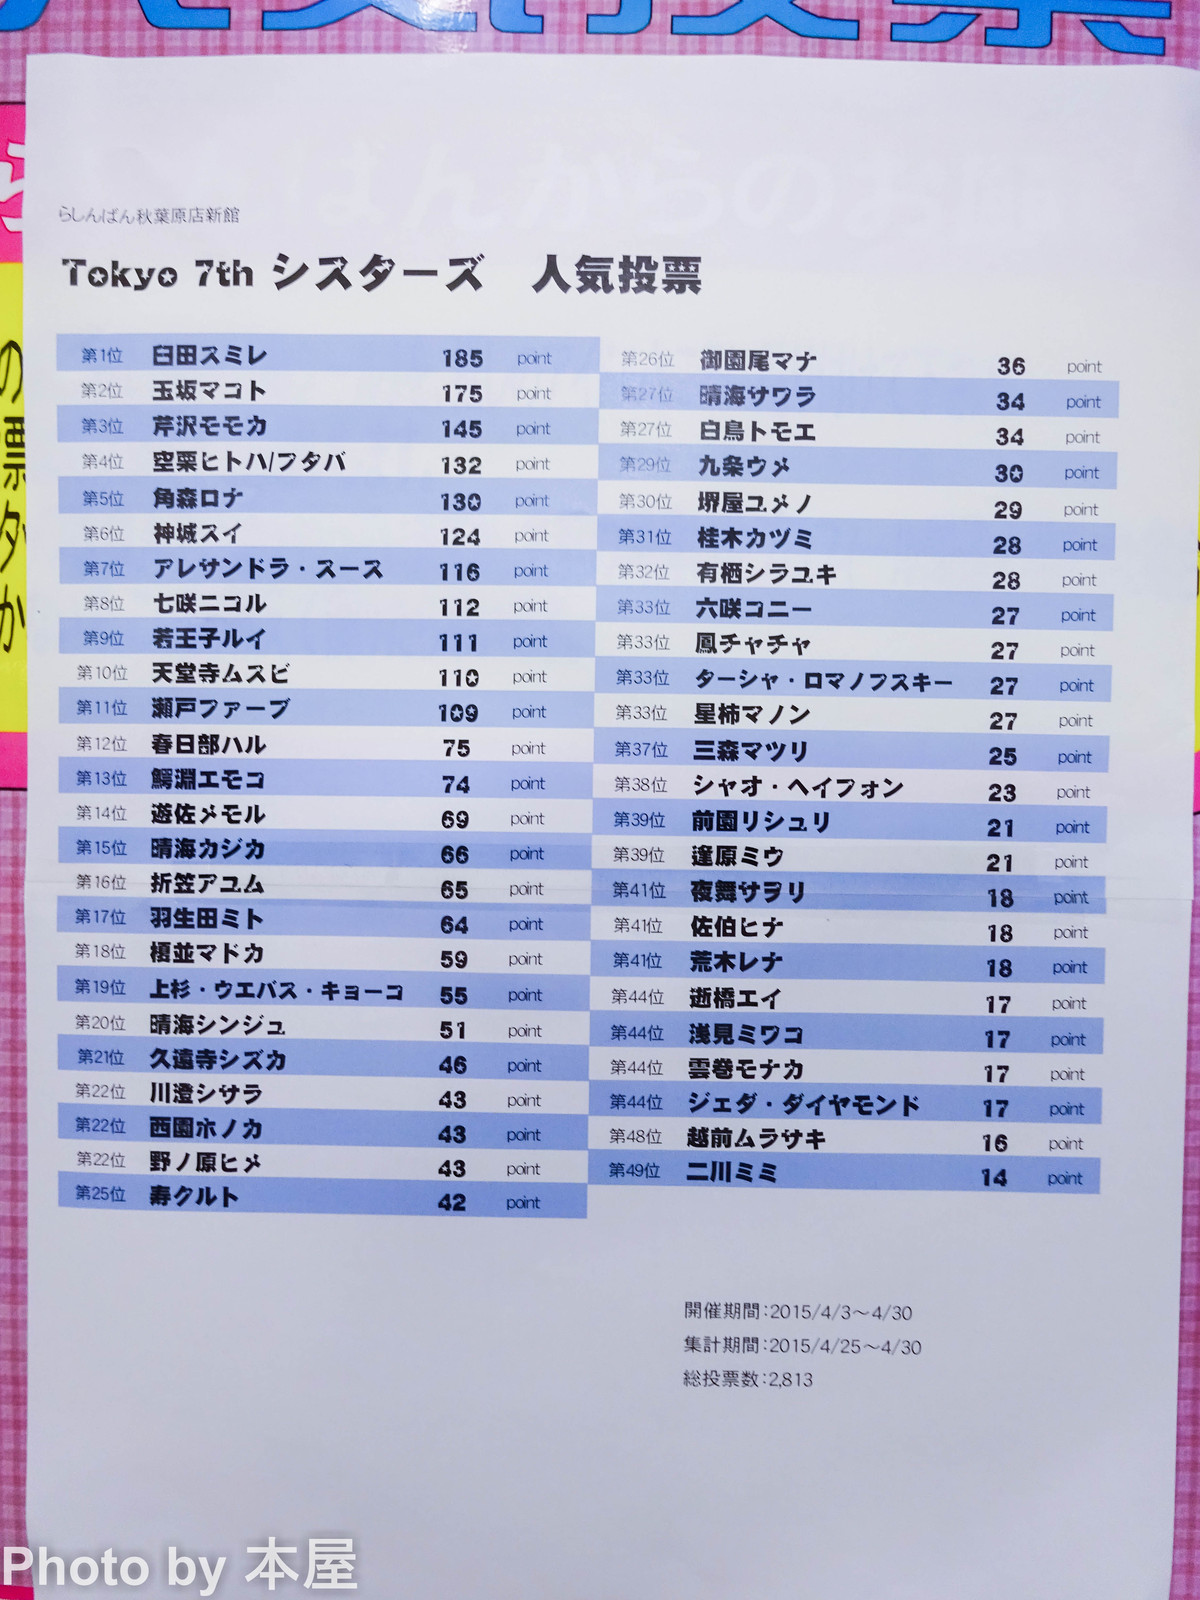 ナナシス人気投票 らしんばん秋葉原新館にて Tokyo 7th シスターズ 人気投票が開催 アキバな本屋